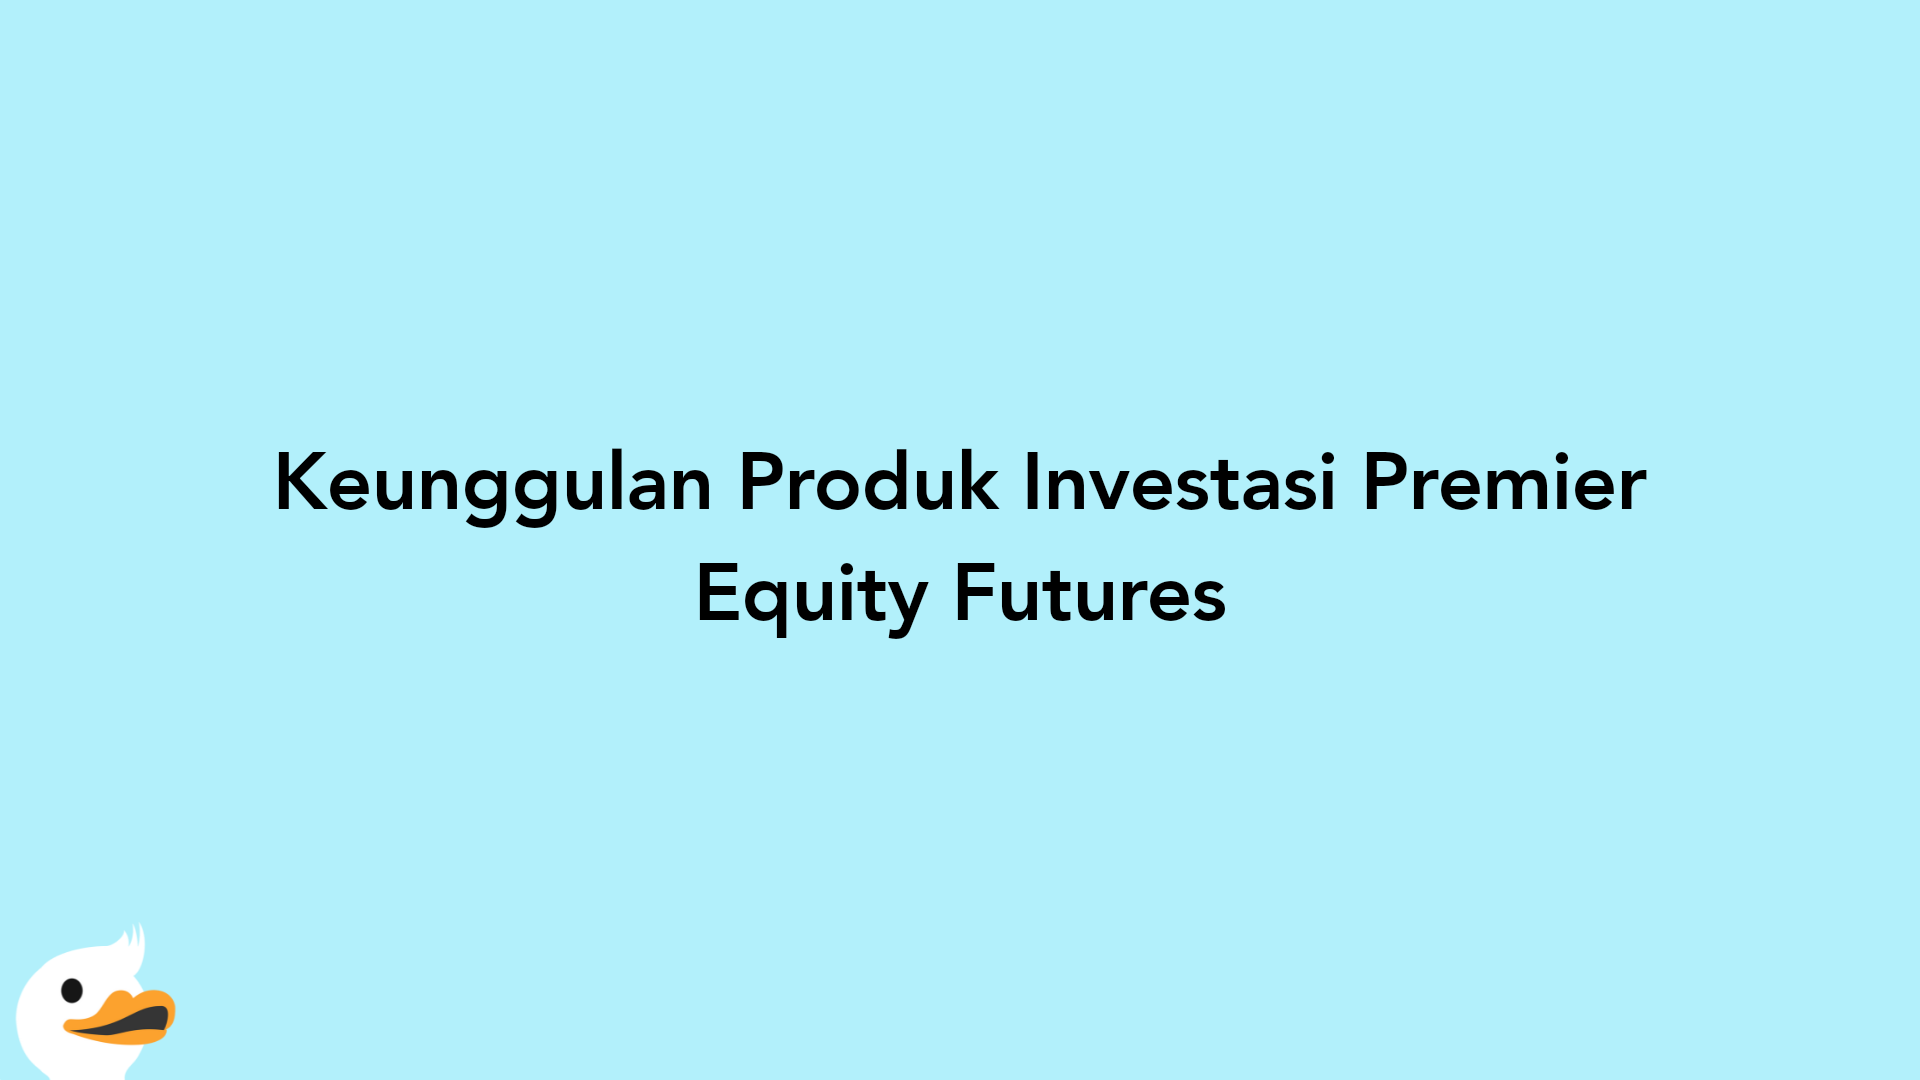 Keunggulan Produk Investasi Premier Equity Futures